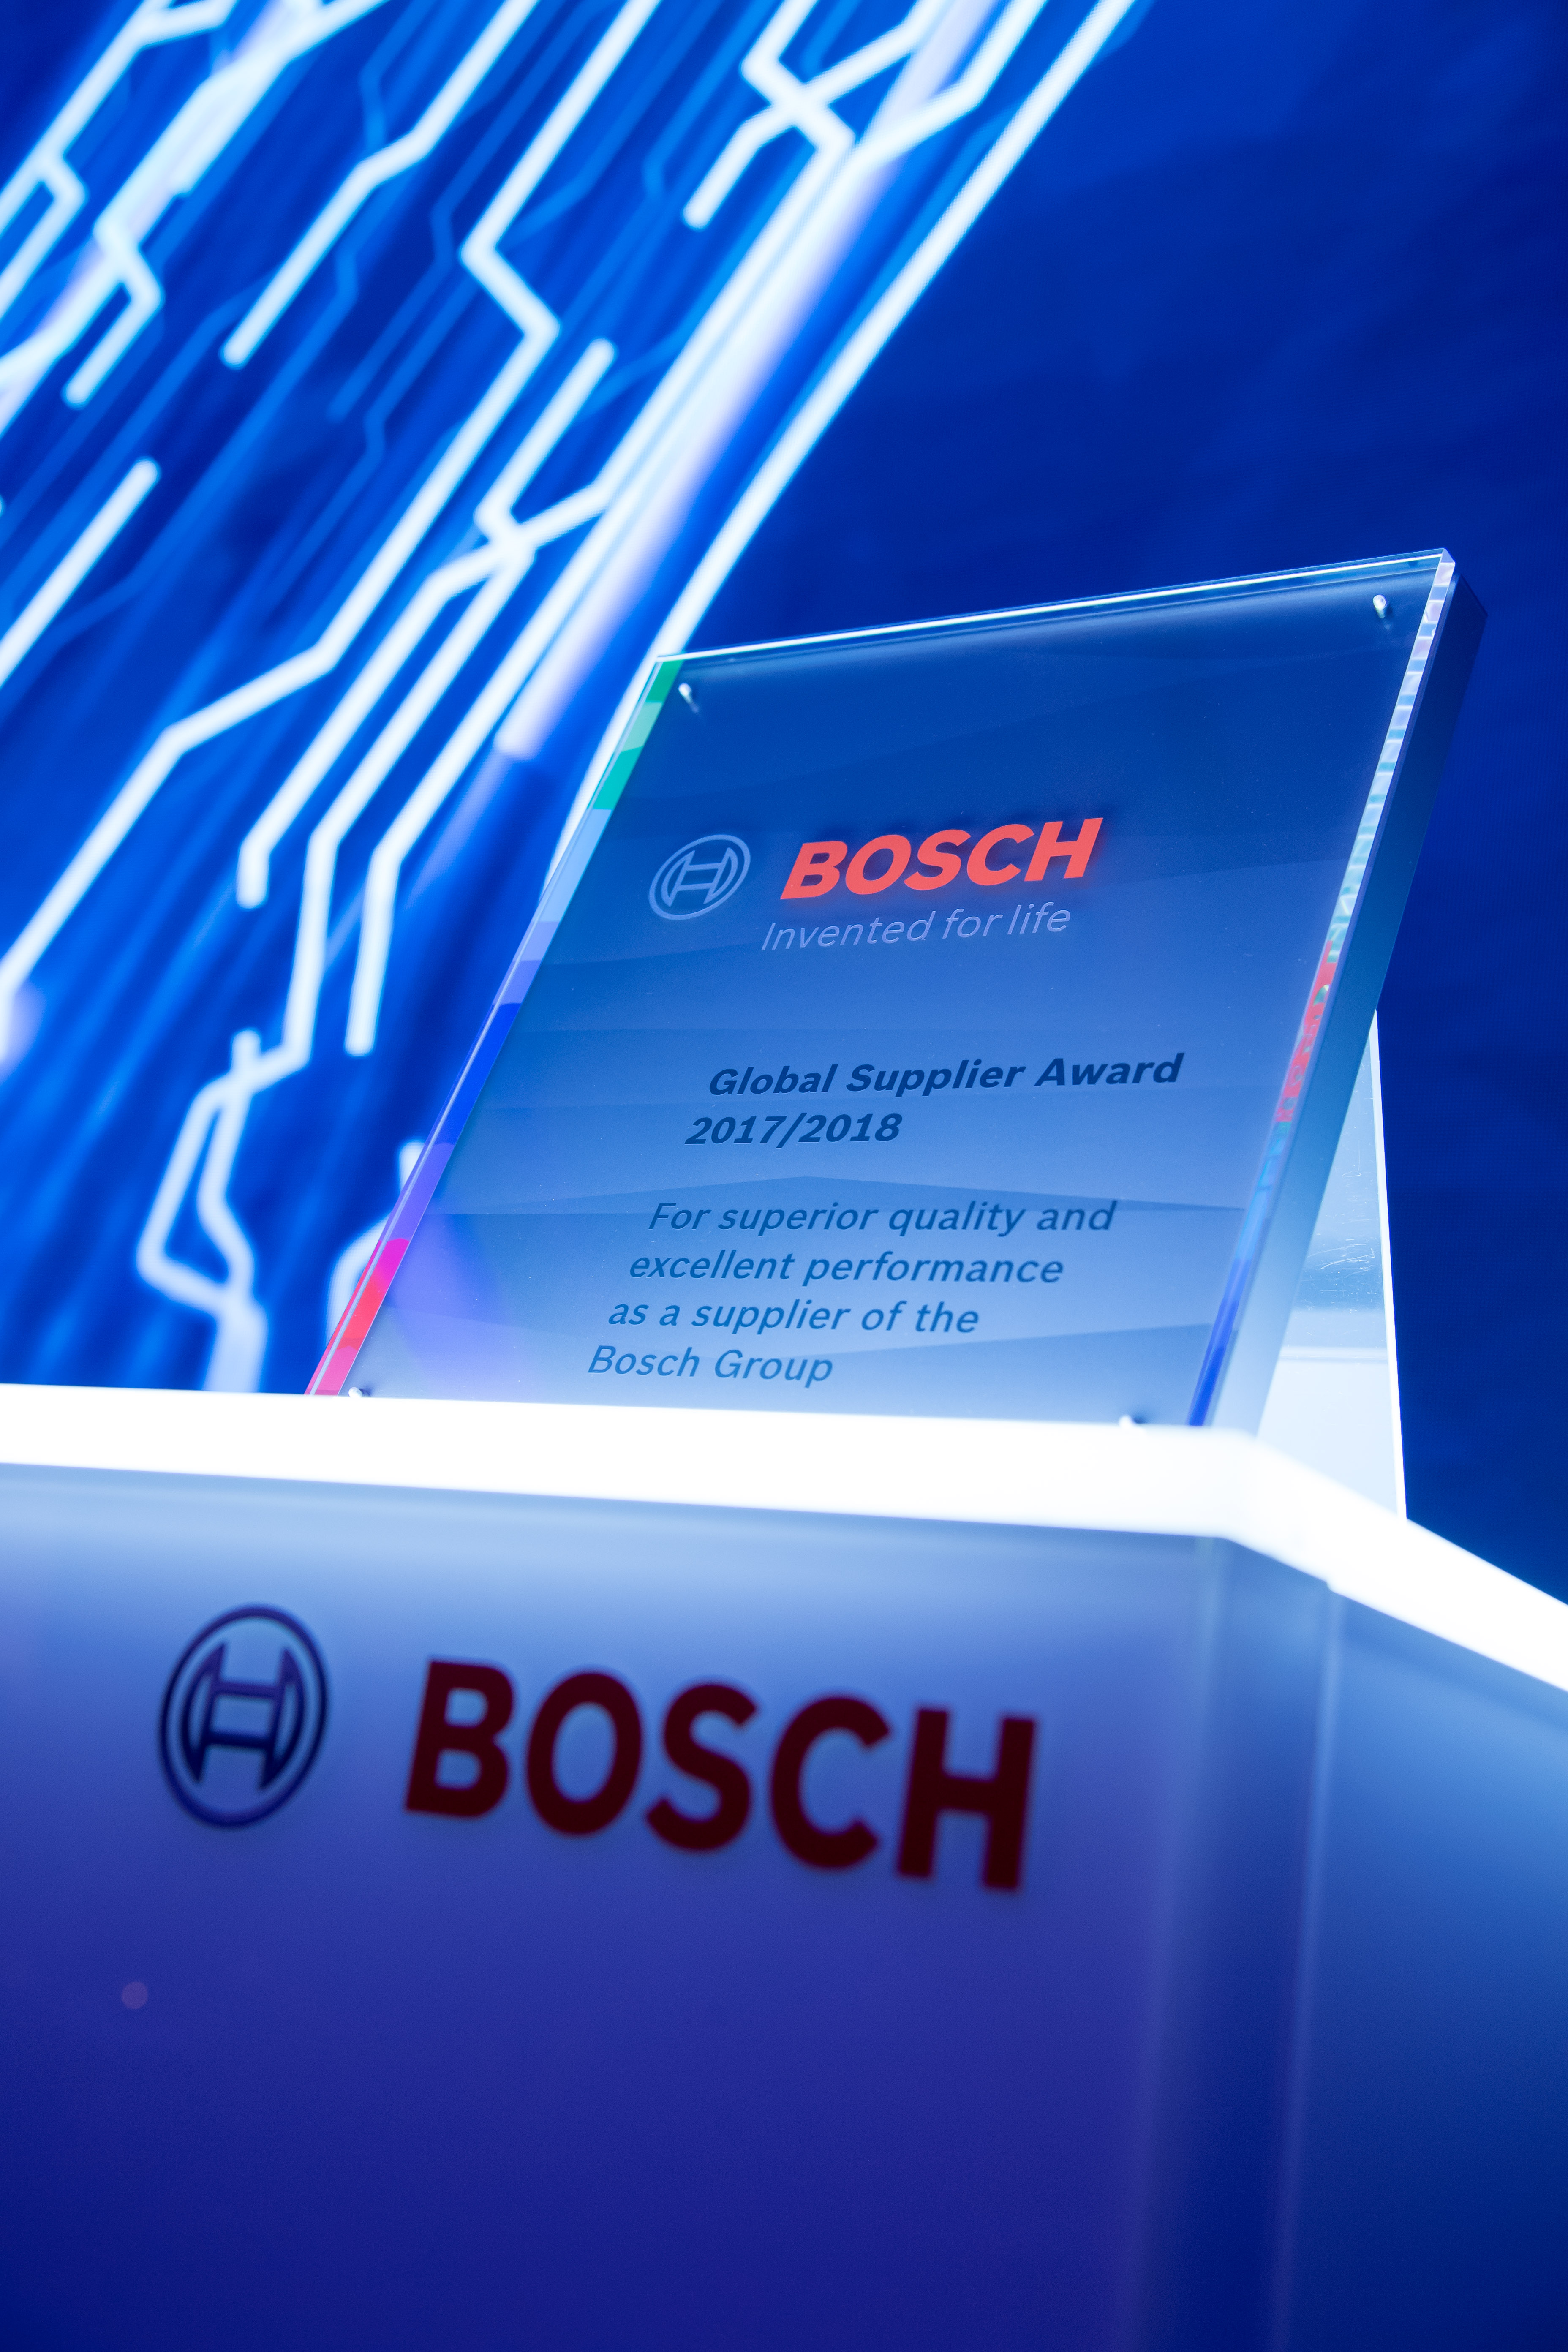 16. Bosch Global Supplier Award